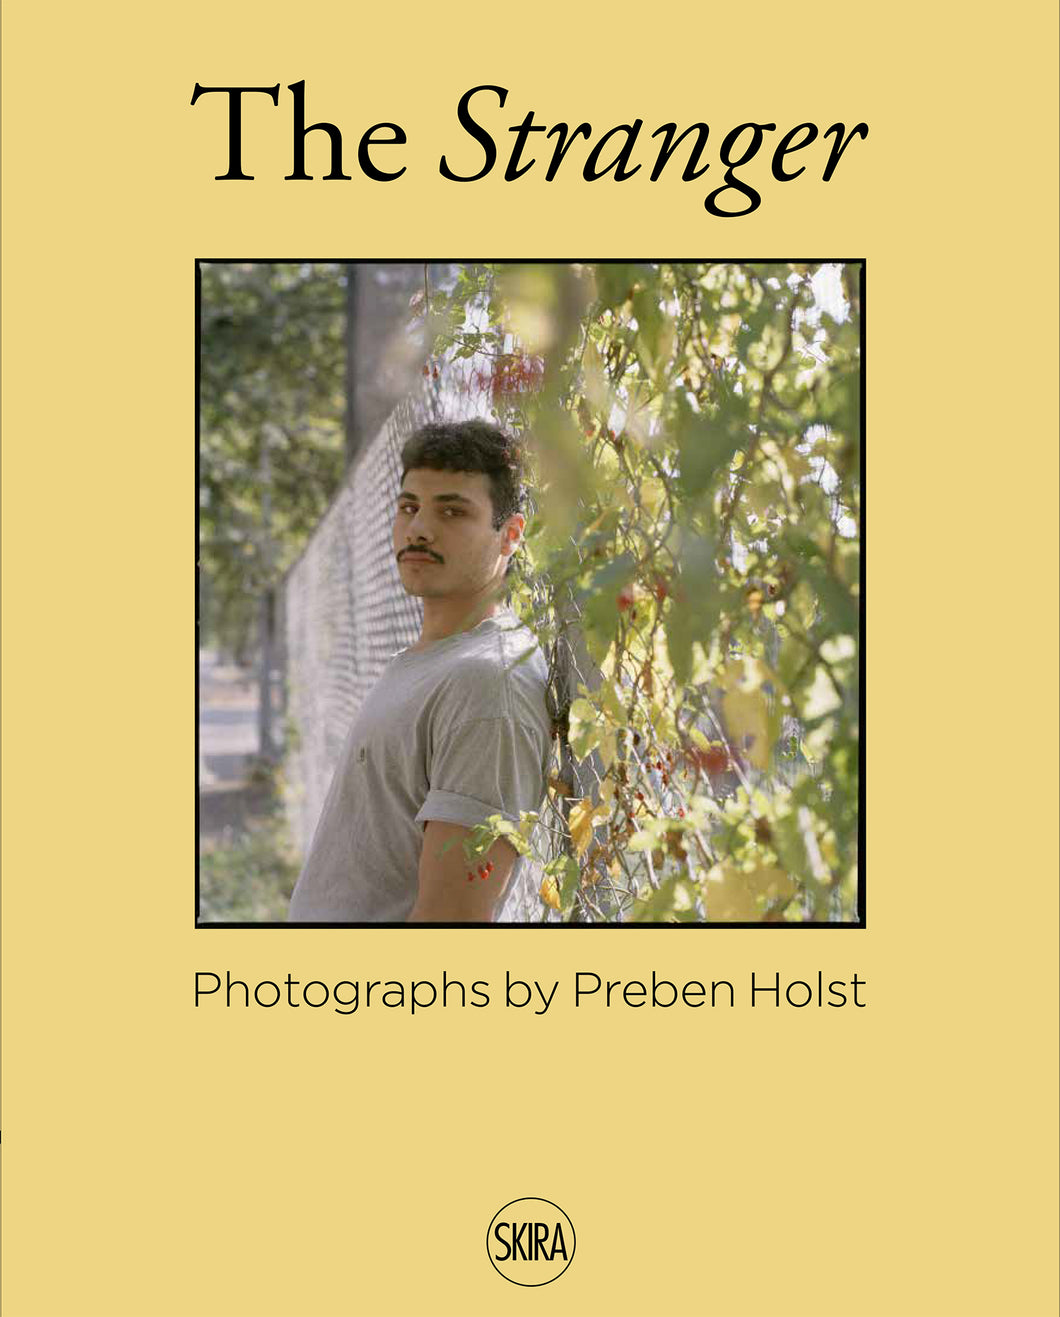 The Stranger - Photographs by Preben Holst